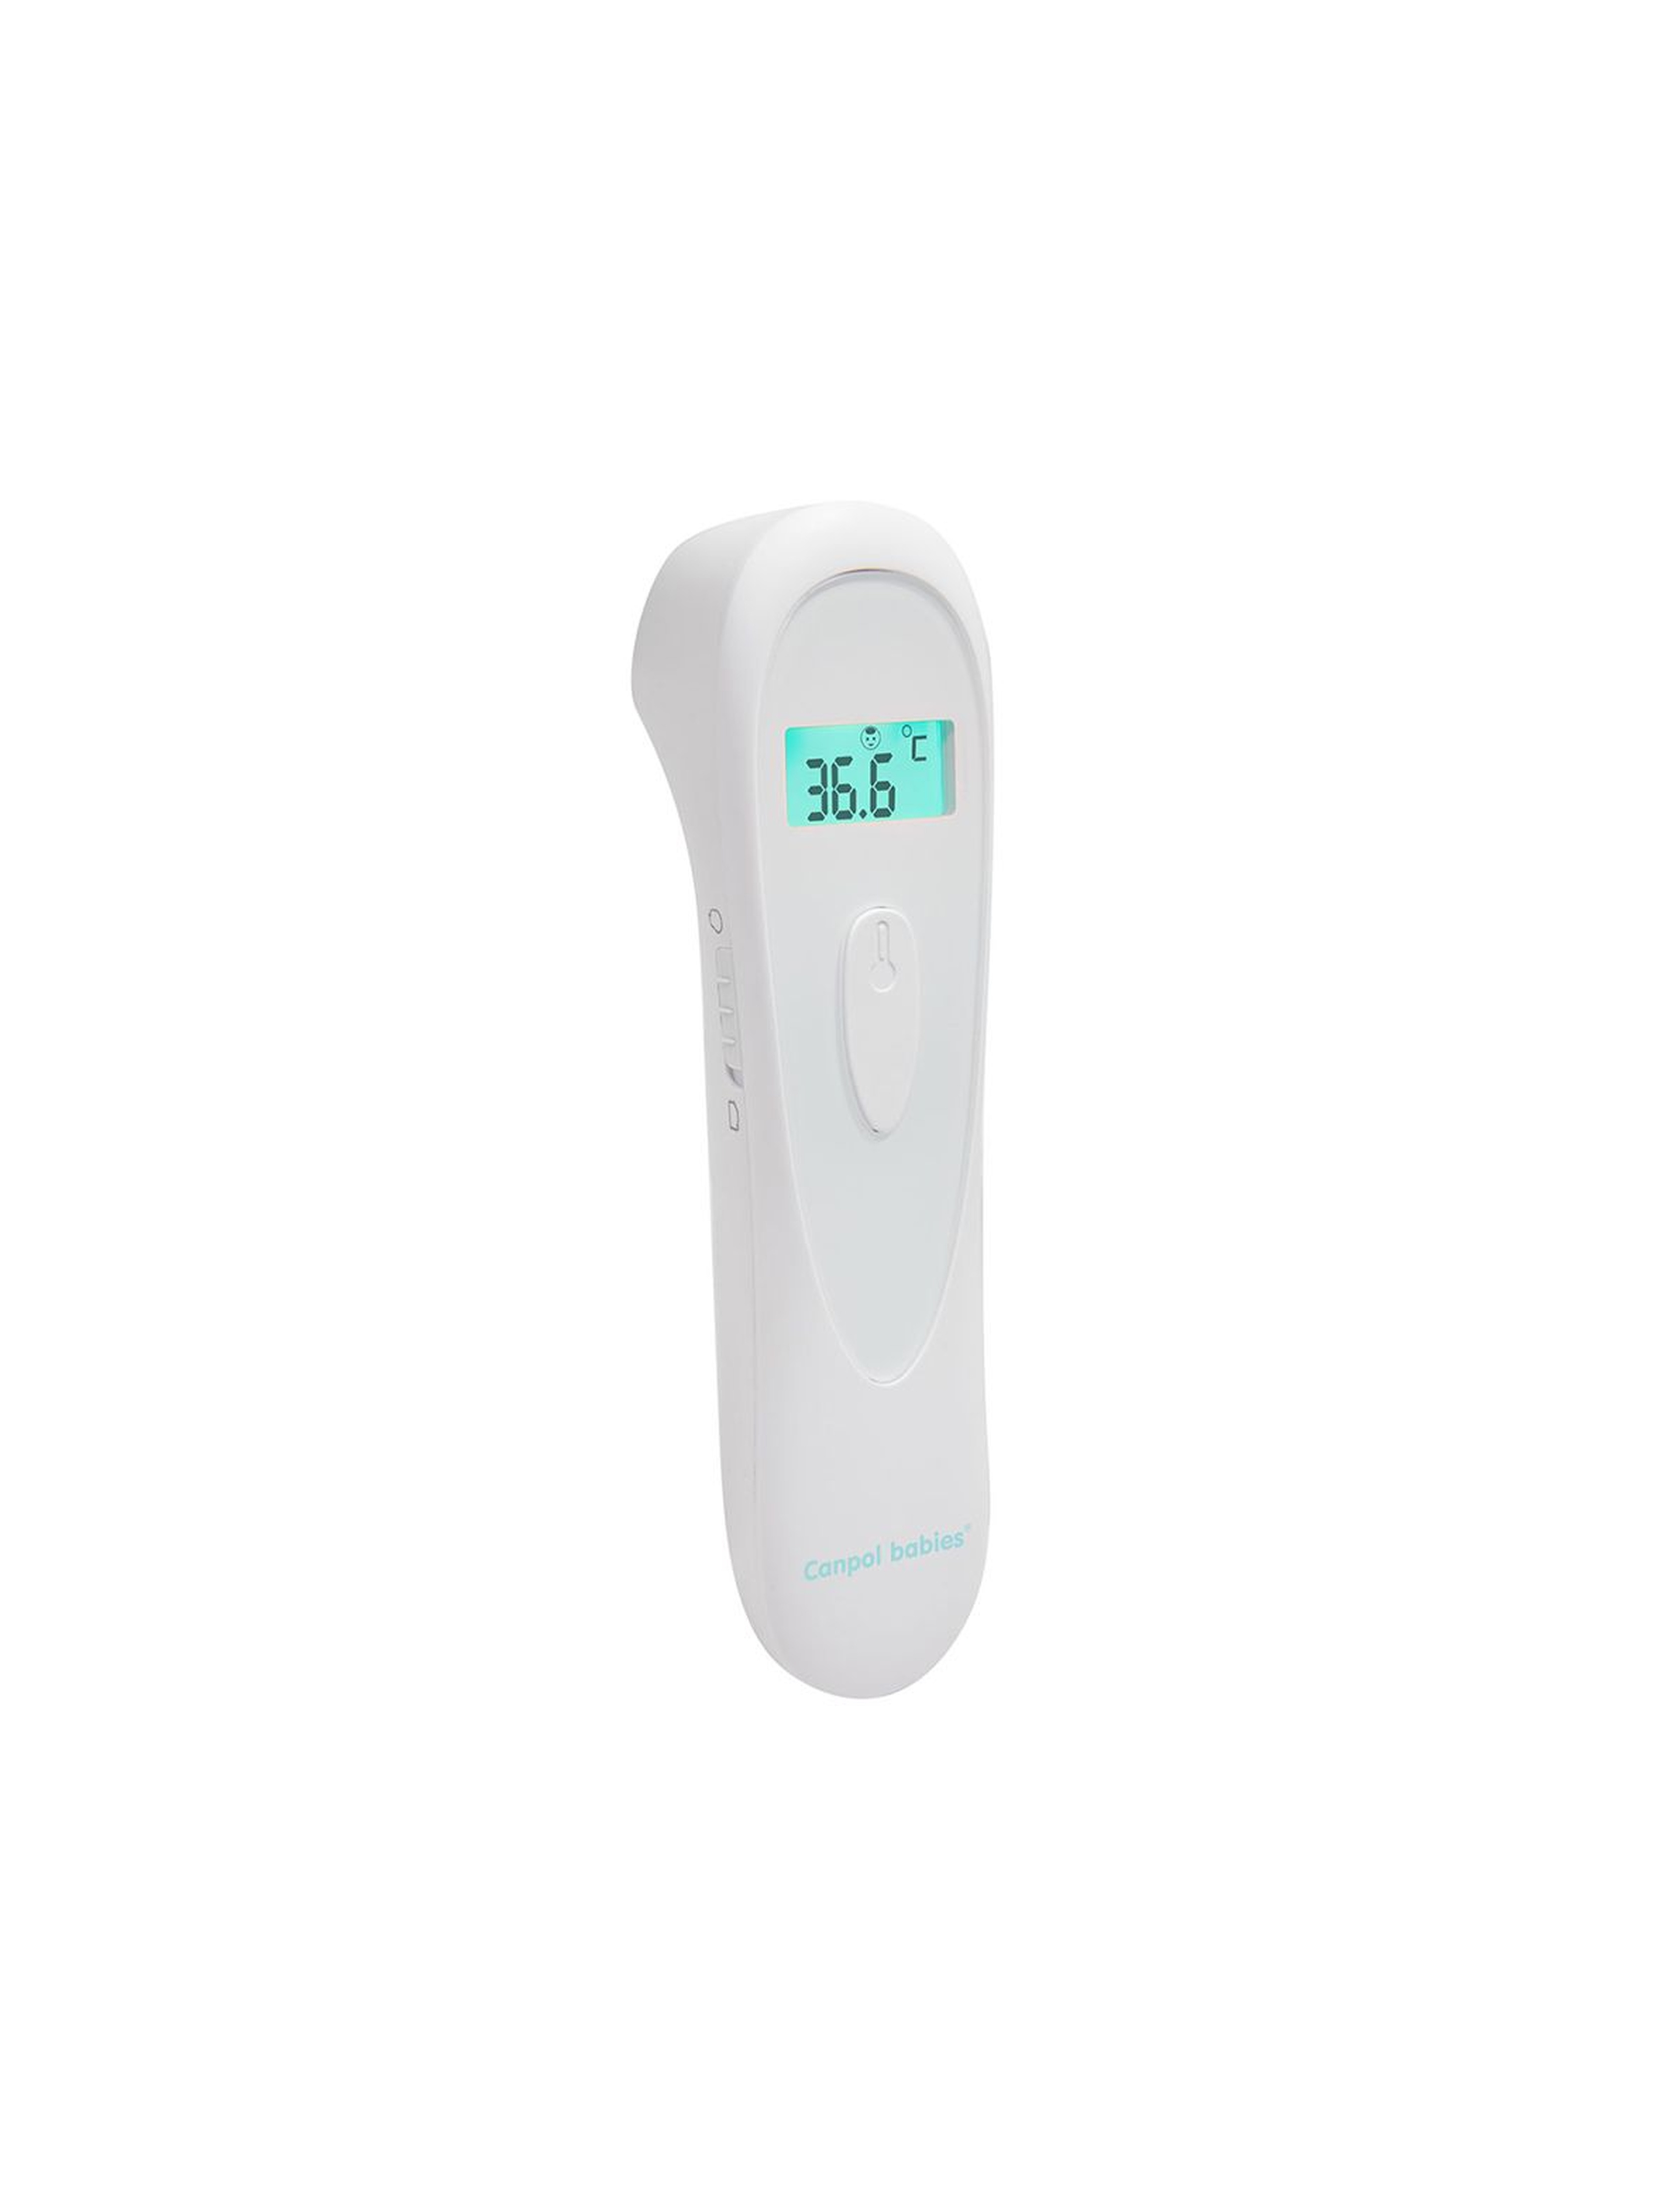 Canpol babies bezdotykowy termometr na podczerwień EasyStart